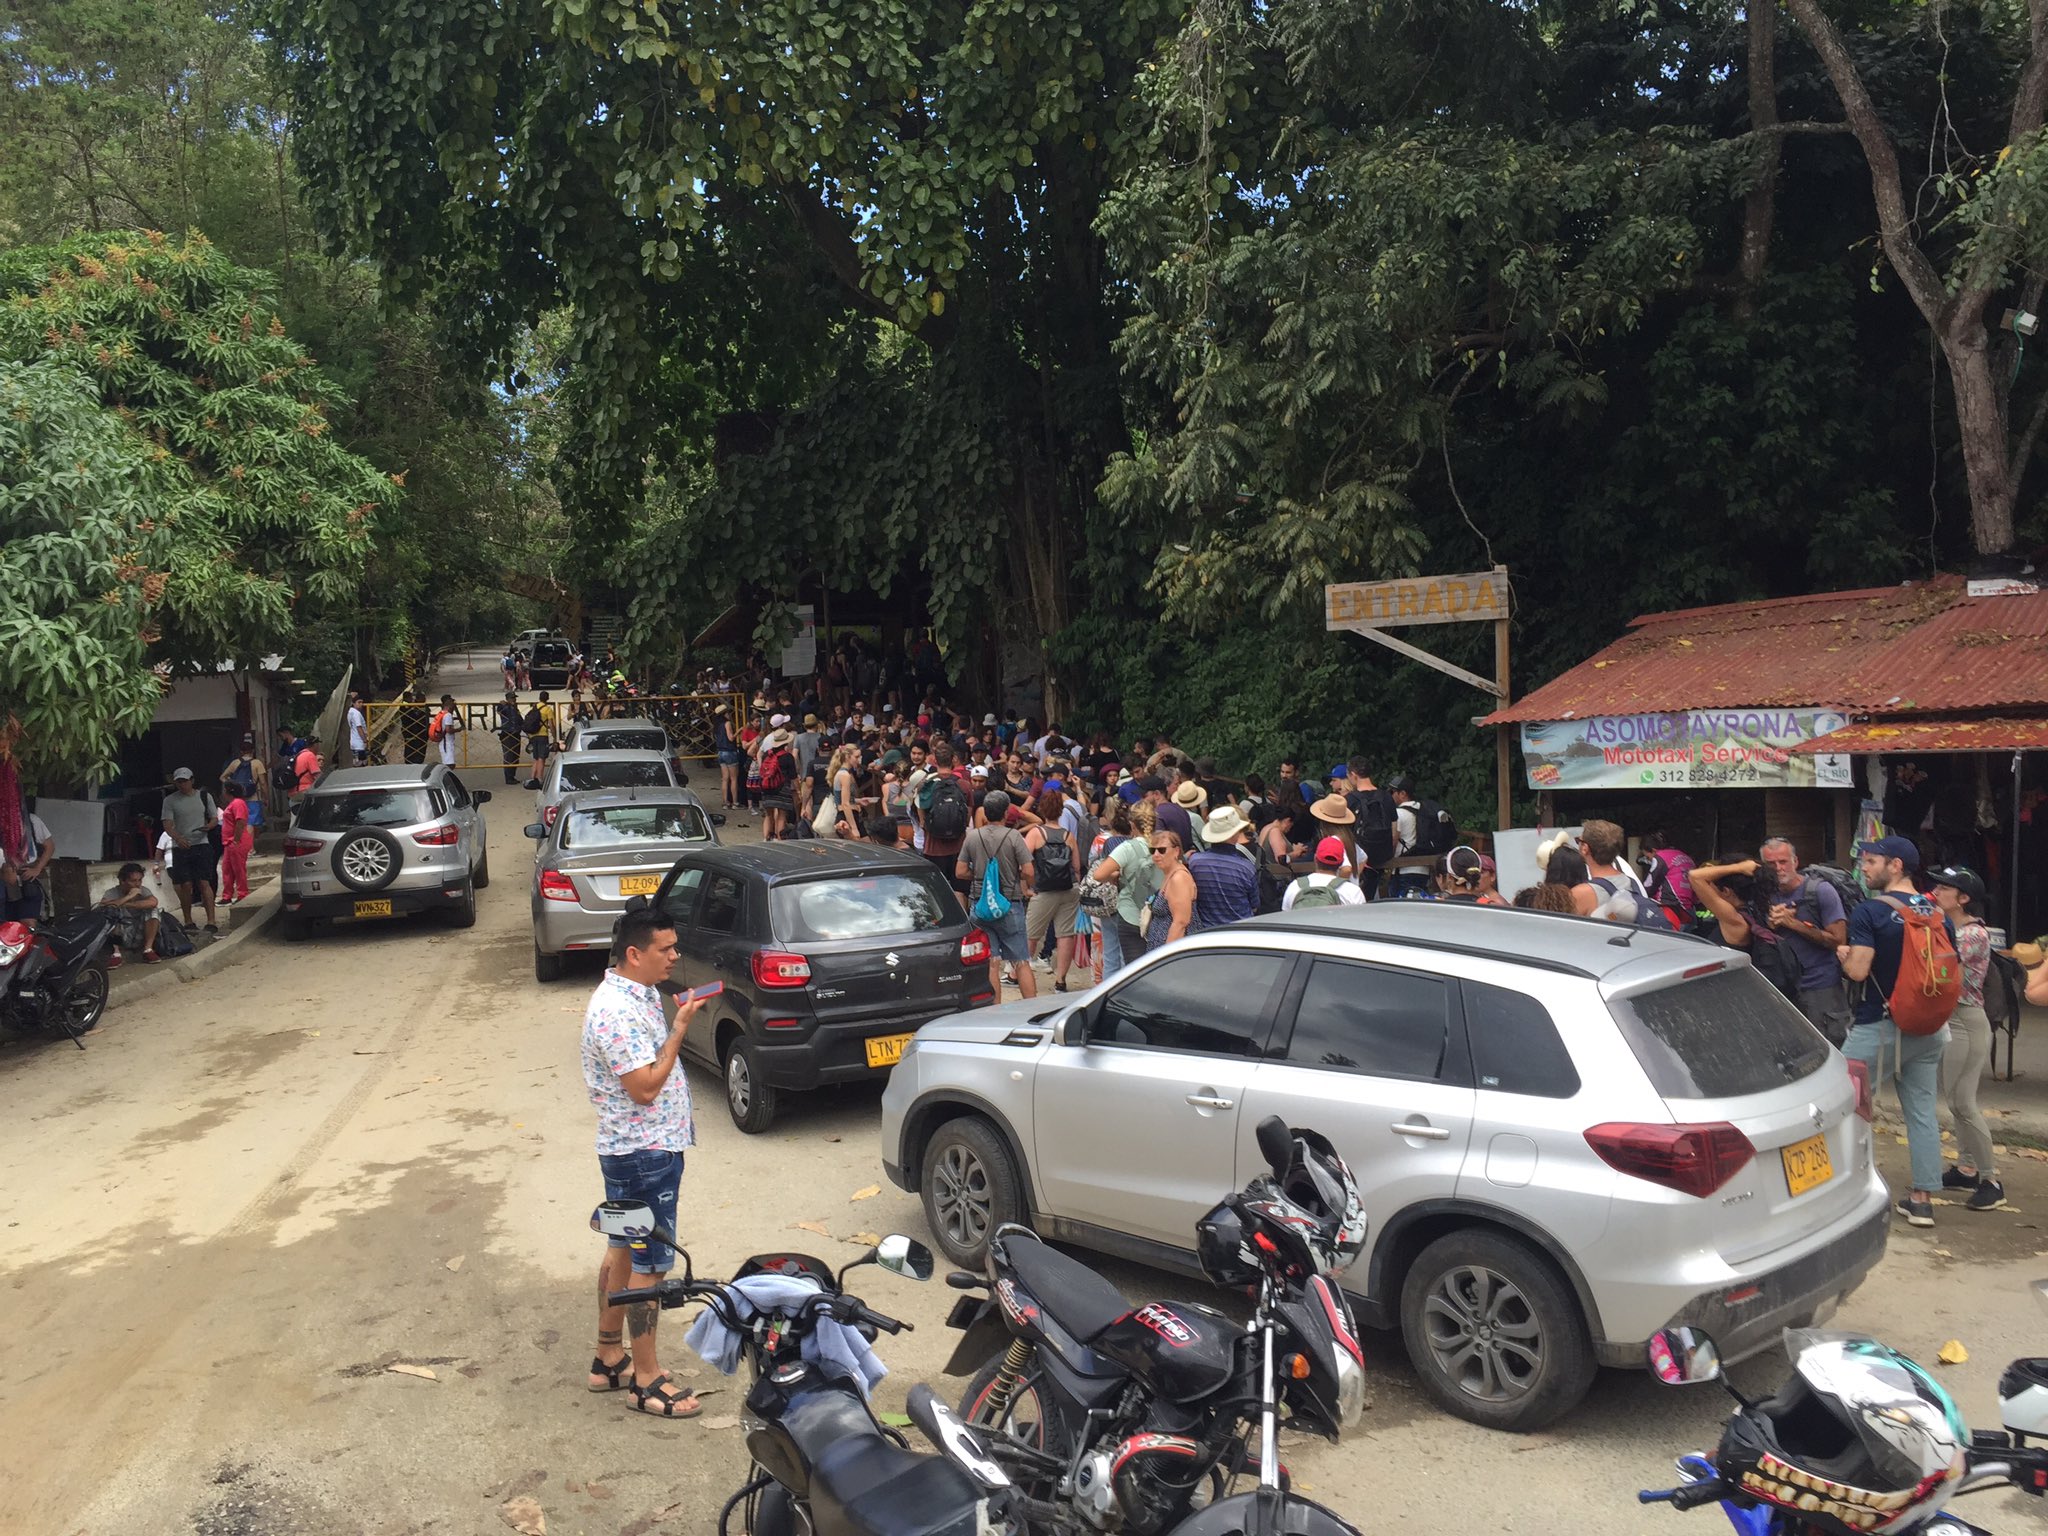 Las aglomeraciones en el parque Tayrona se reportan desde tempranas horas de este jueves